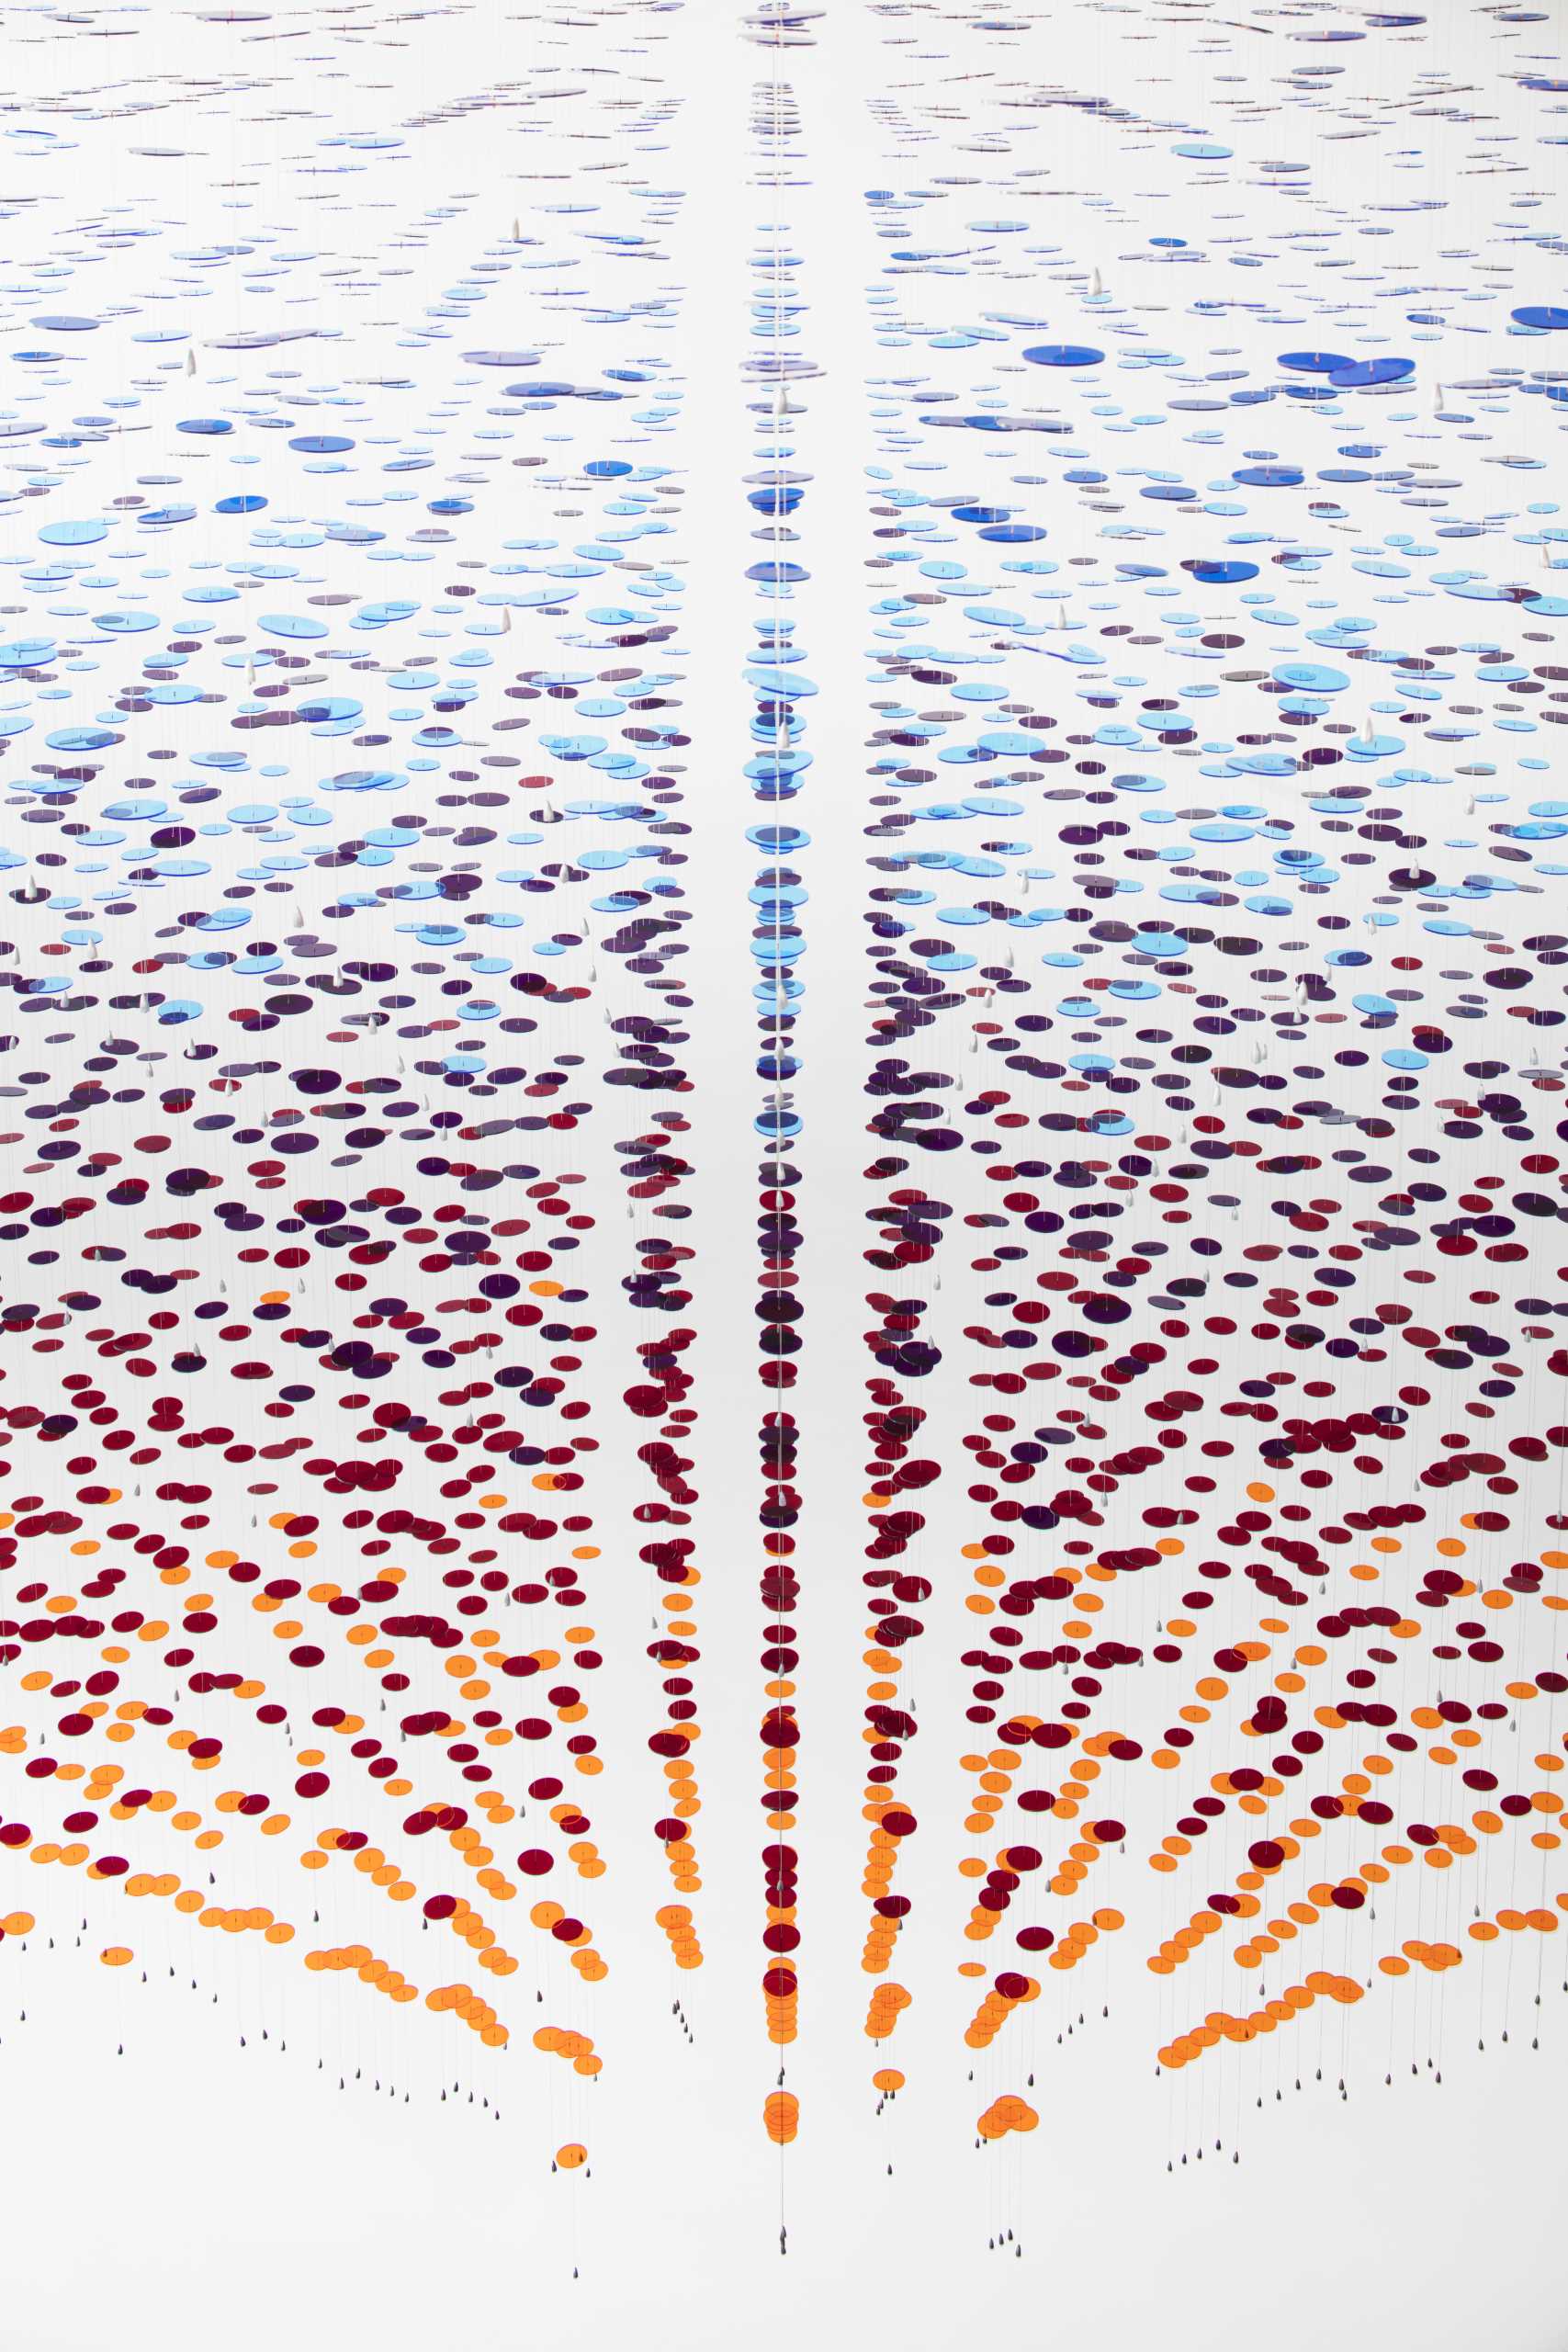 یک نصب هنری سفارشی در دهلیز لابی از 8000 دیسک رنگارنگ که از 650 کابل سیمی آویزان شده اند ساخته شده است.